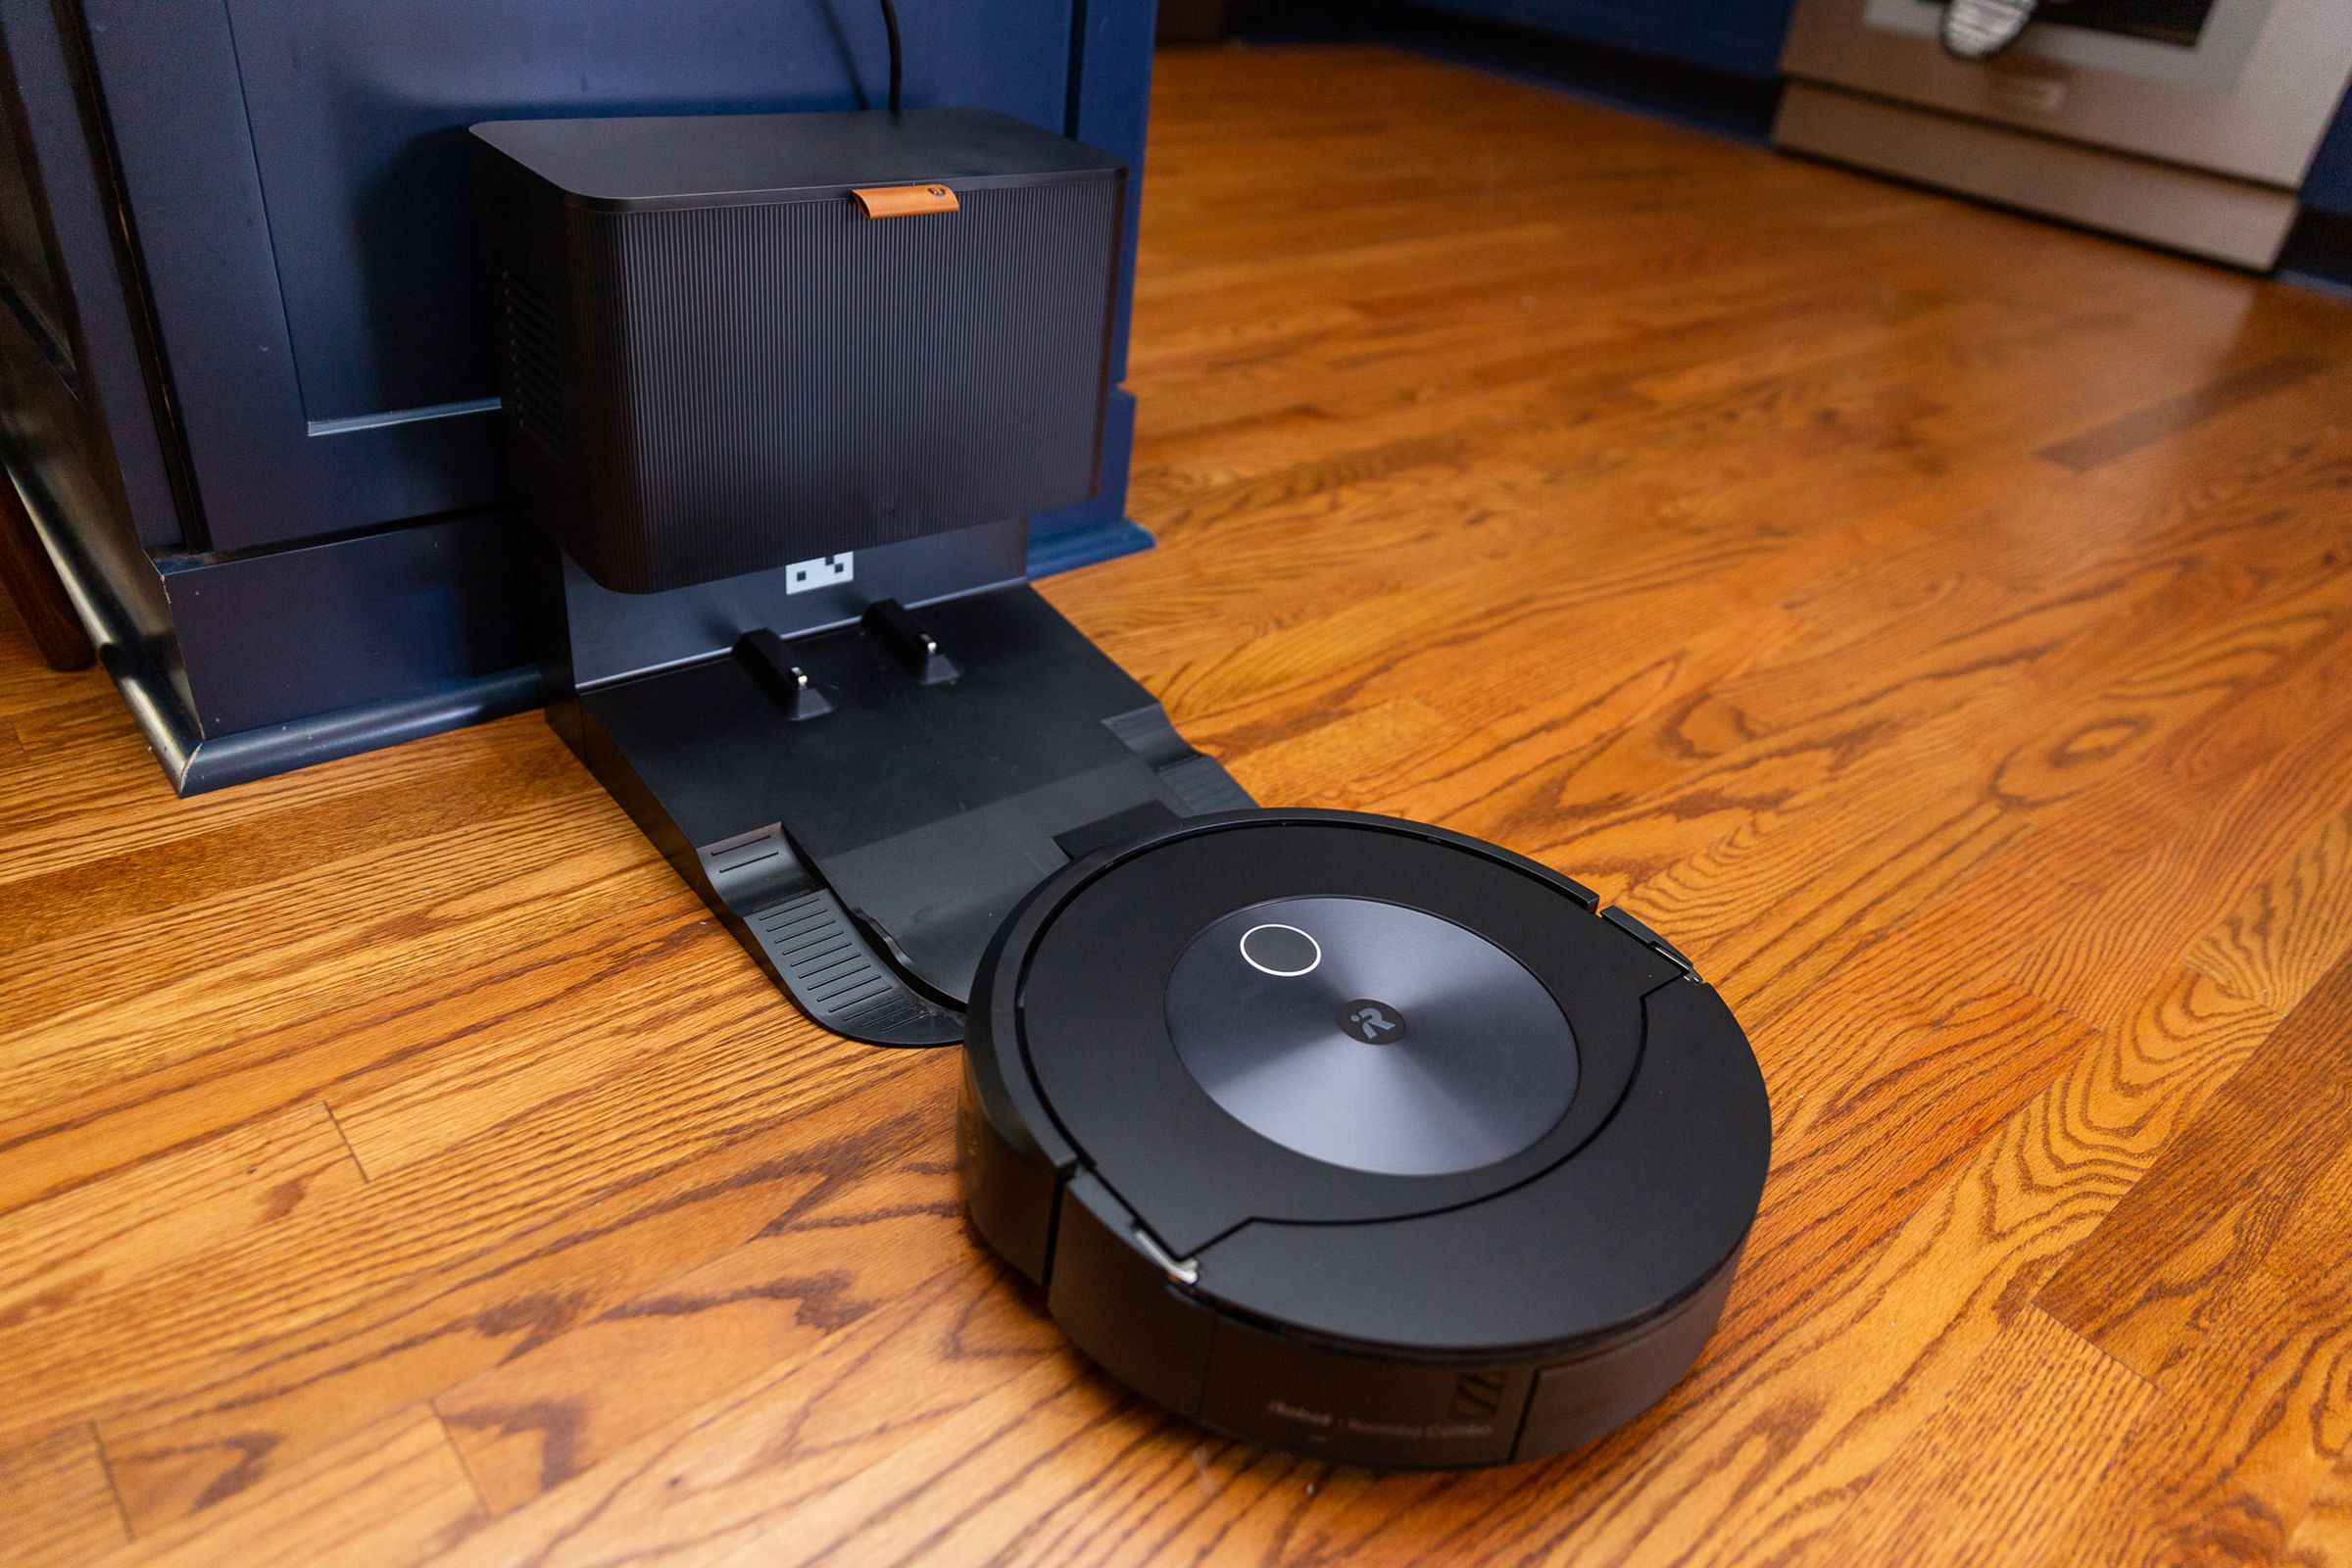 Foto del Roomba Combo J7 acercándose a su base vacía de forma automática.  La base es del tamaño de un pequeño bote de basura de cocina.